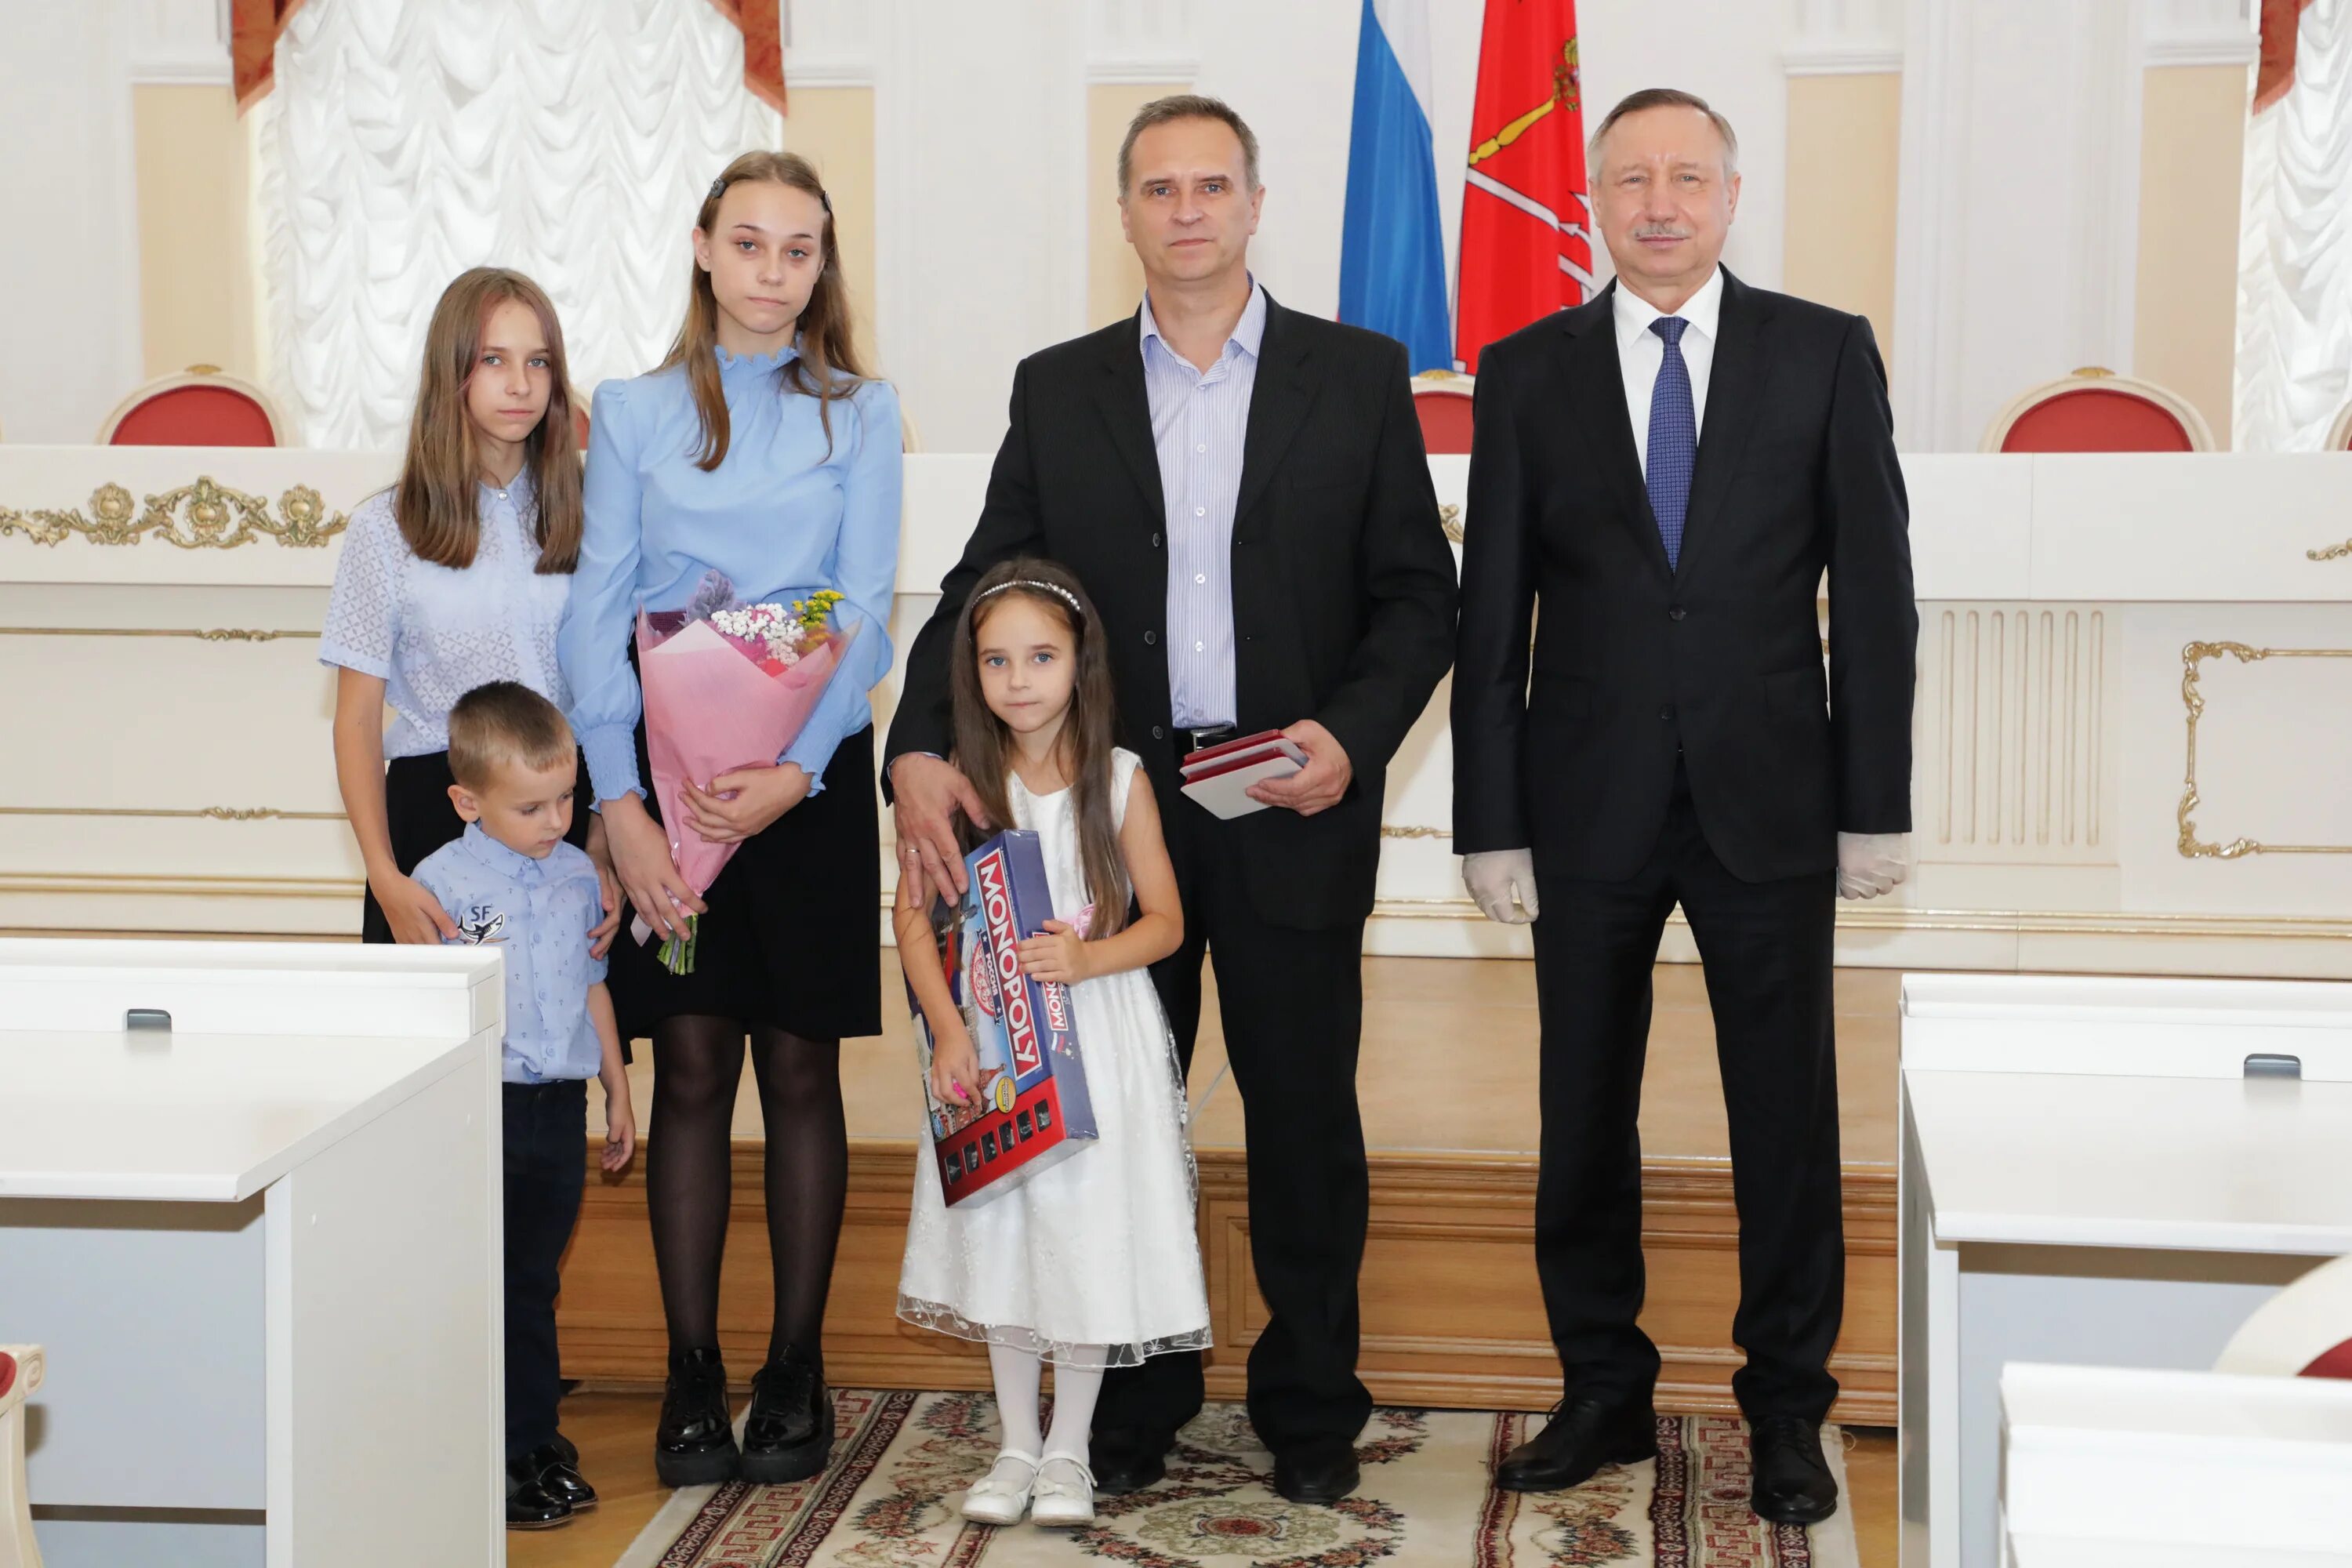 Награждение многодетных семей. Наградил губернатор многодетные семьи в Санкт-Петербурге 2022г. Награждение за многодетность семью. Награждение многодетных семей в Санкт-Петербурге в 2021.